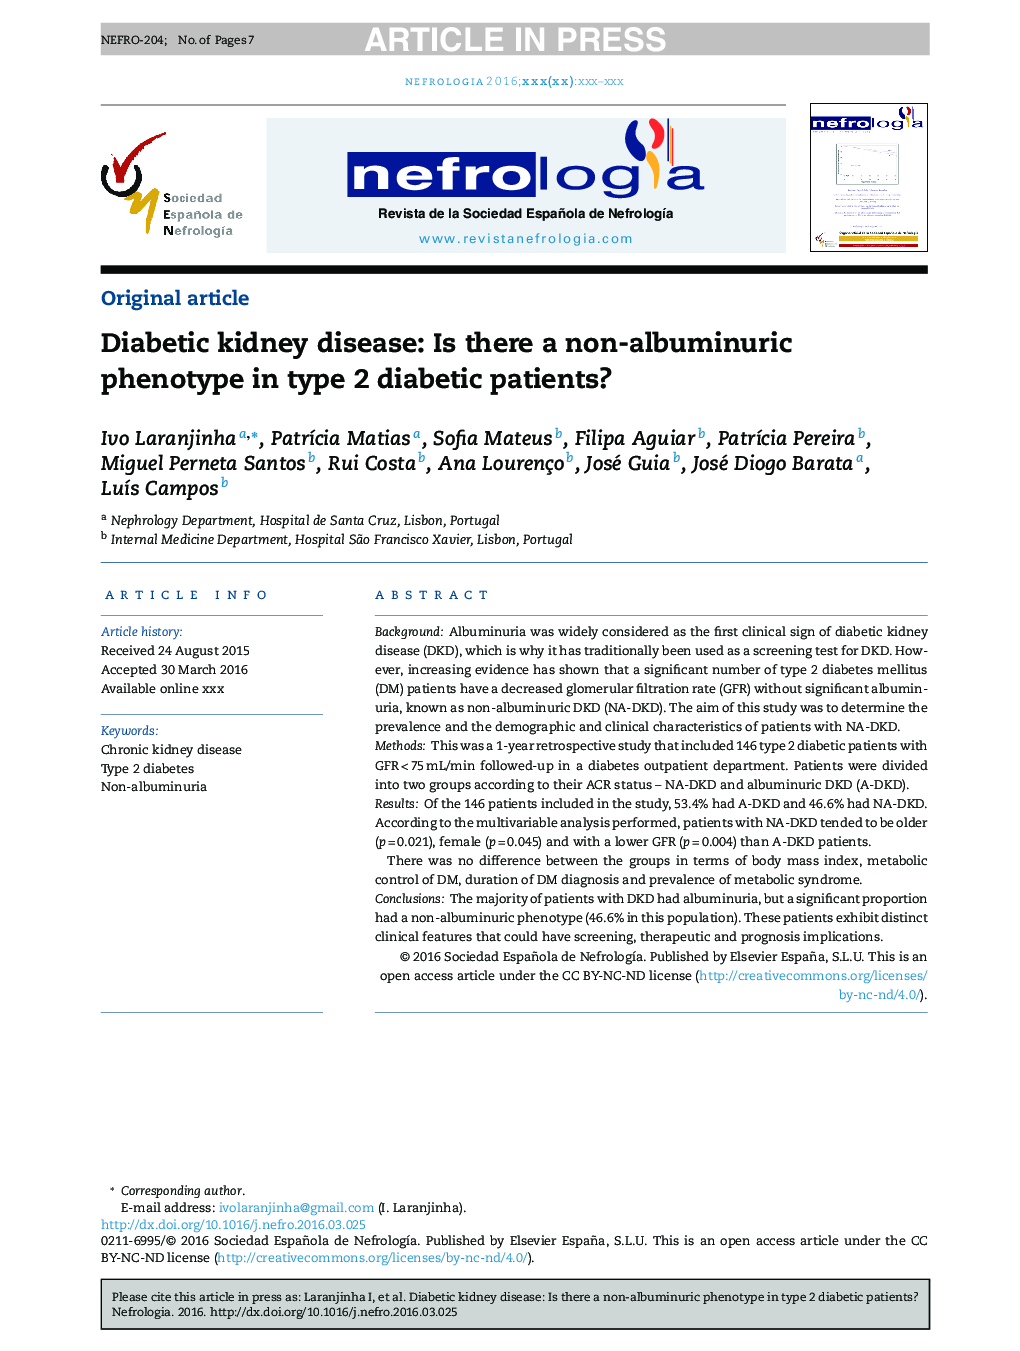 بیماری کلیوی دیابتی: آیا وجود فنوتیپ غیر آلبومینوری در بیماران دیابتی نوع 2 وجود دارد؟ 